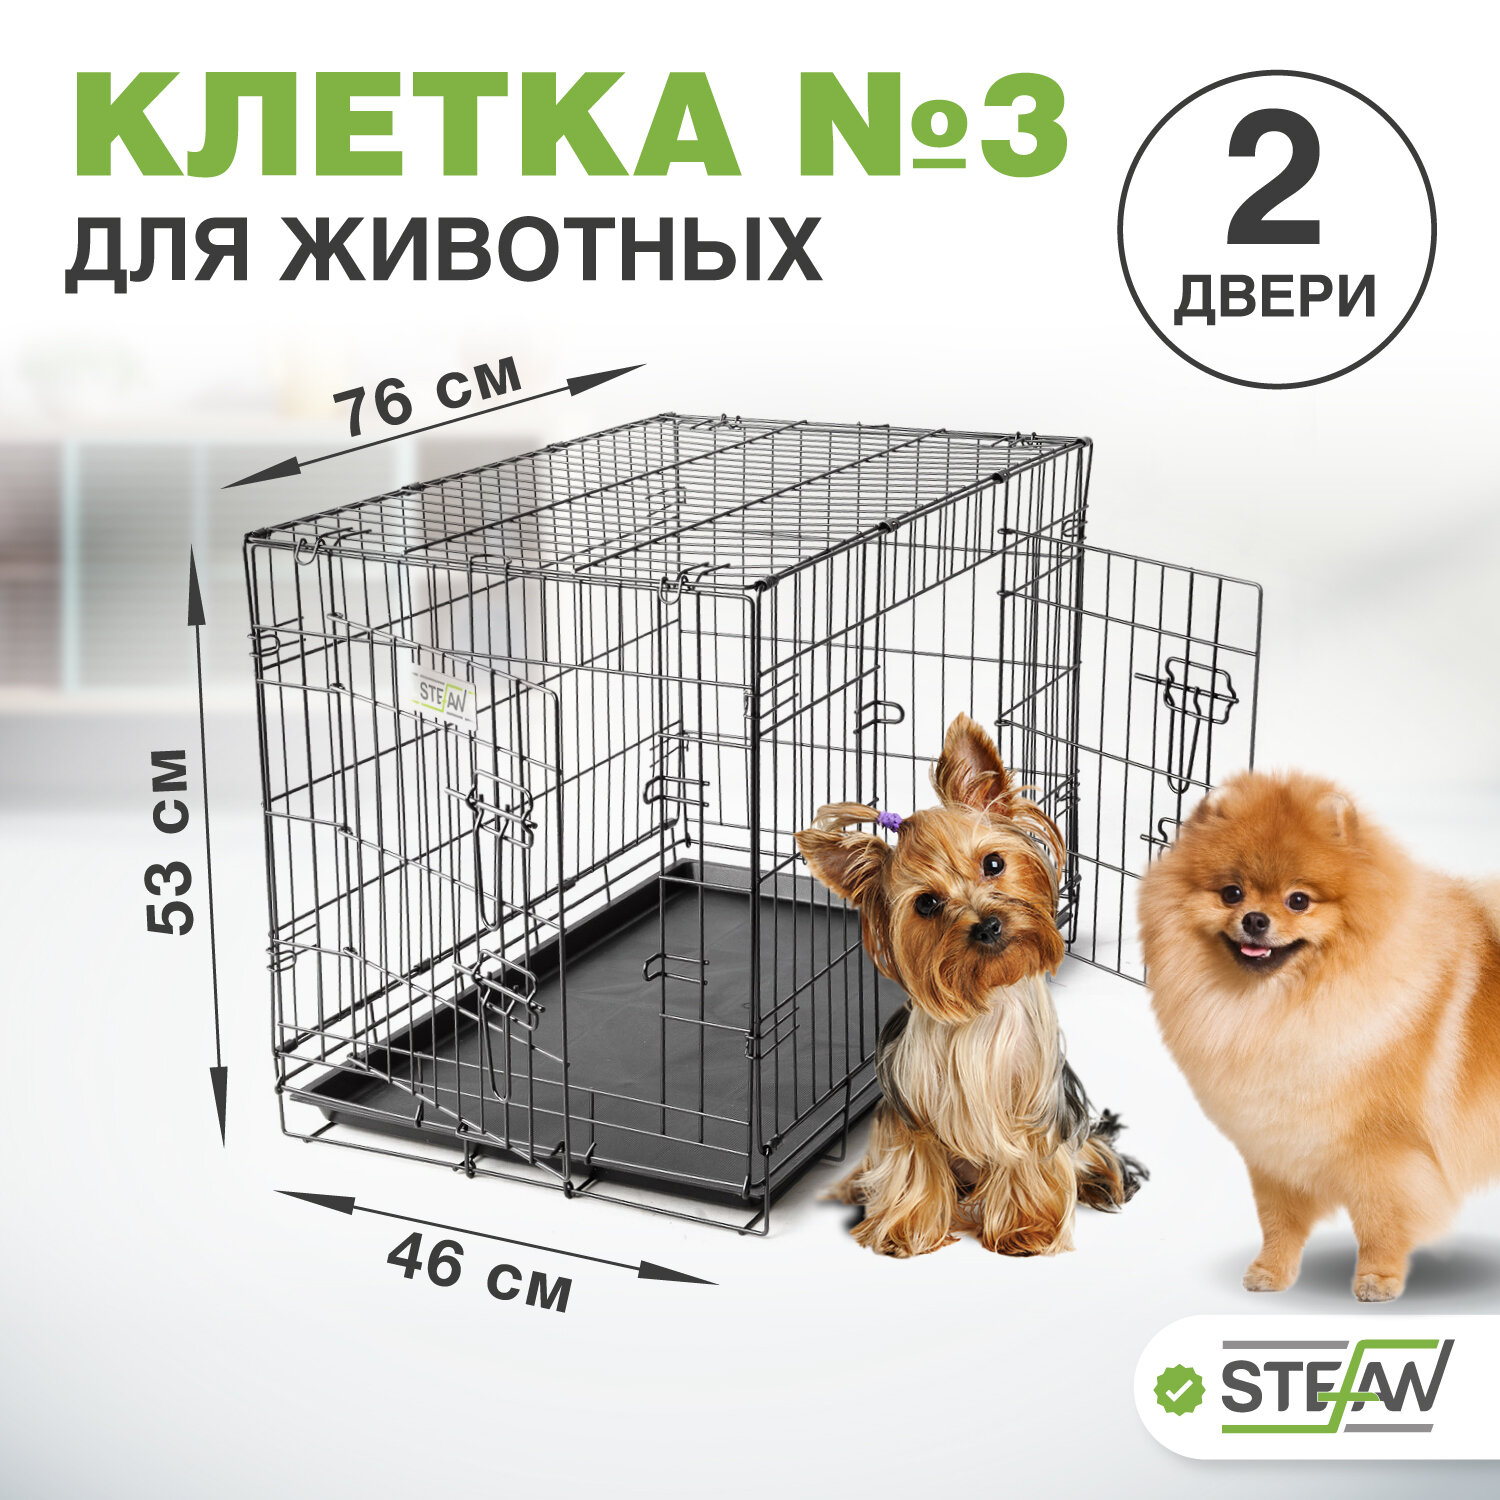 Клетка для собак с поддоном, 2х двери, металл STEFAN (Штефан), №3 76x46x53, черный, MC203